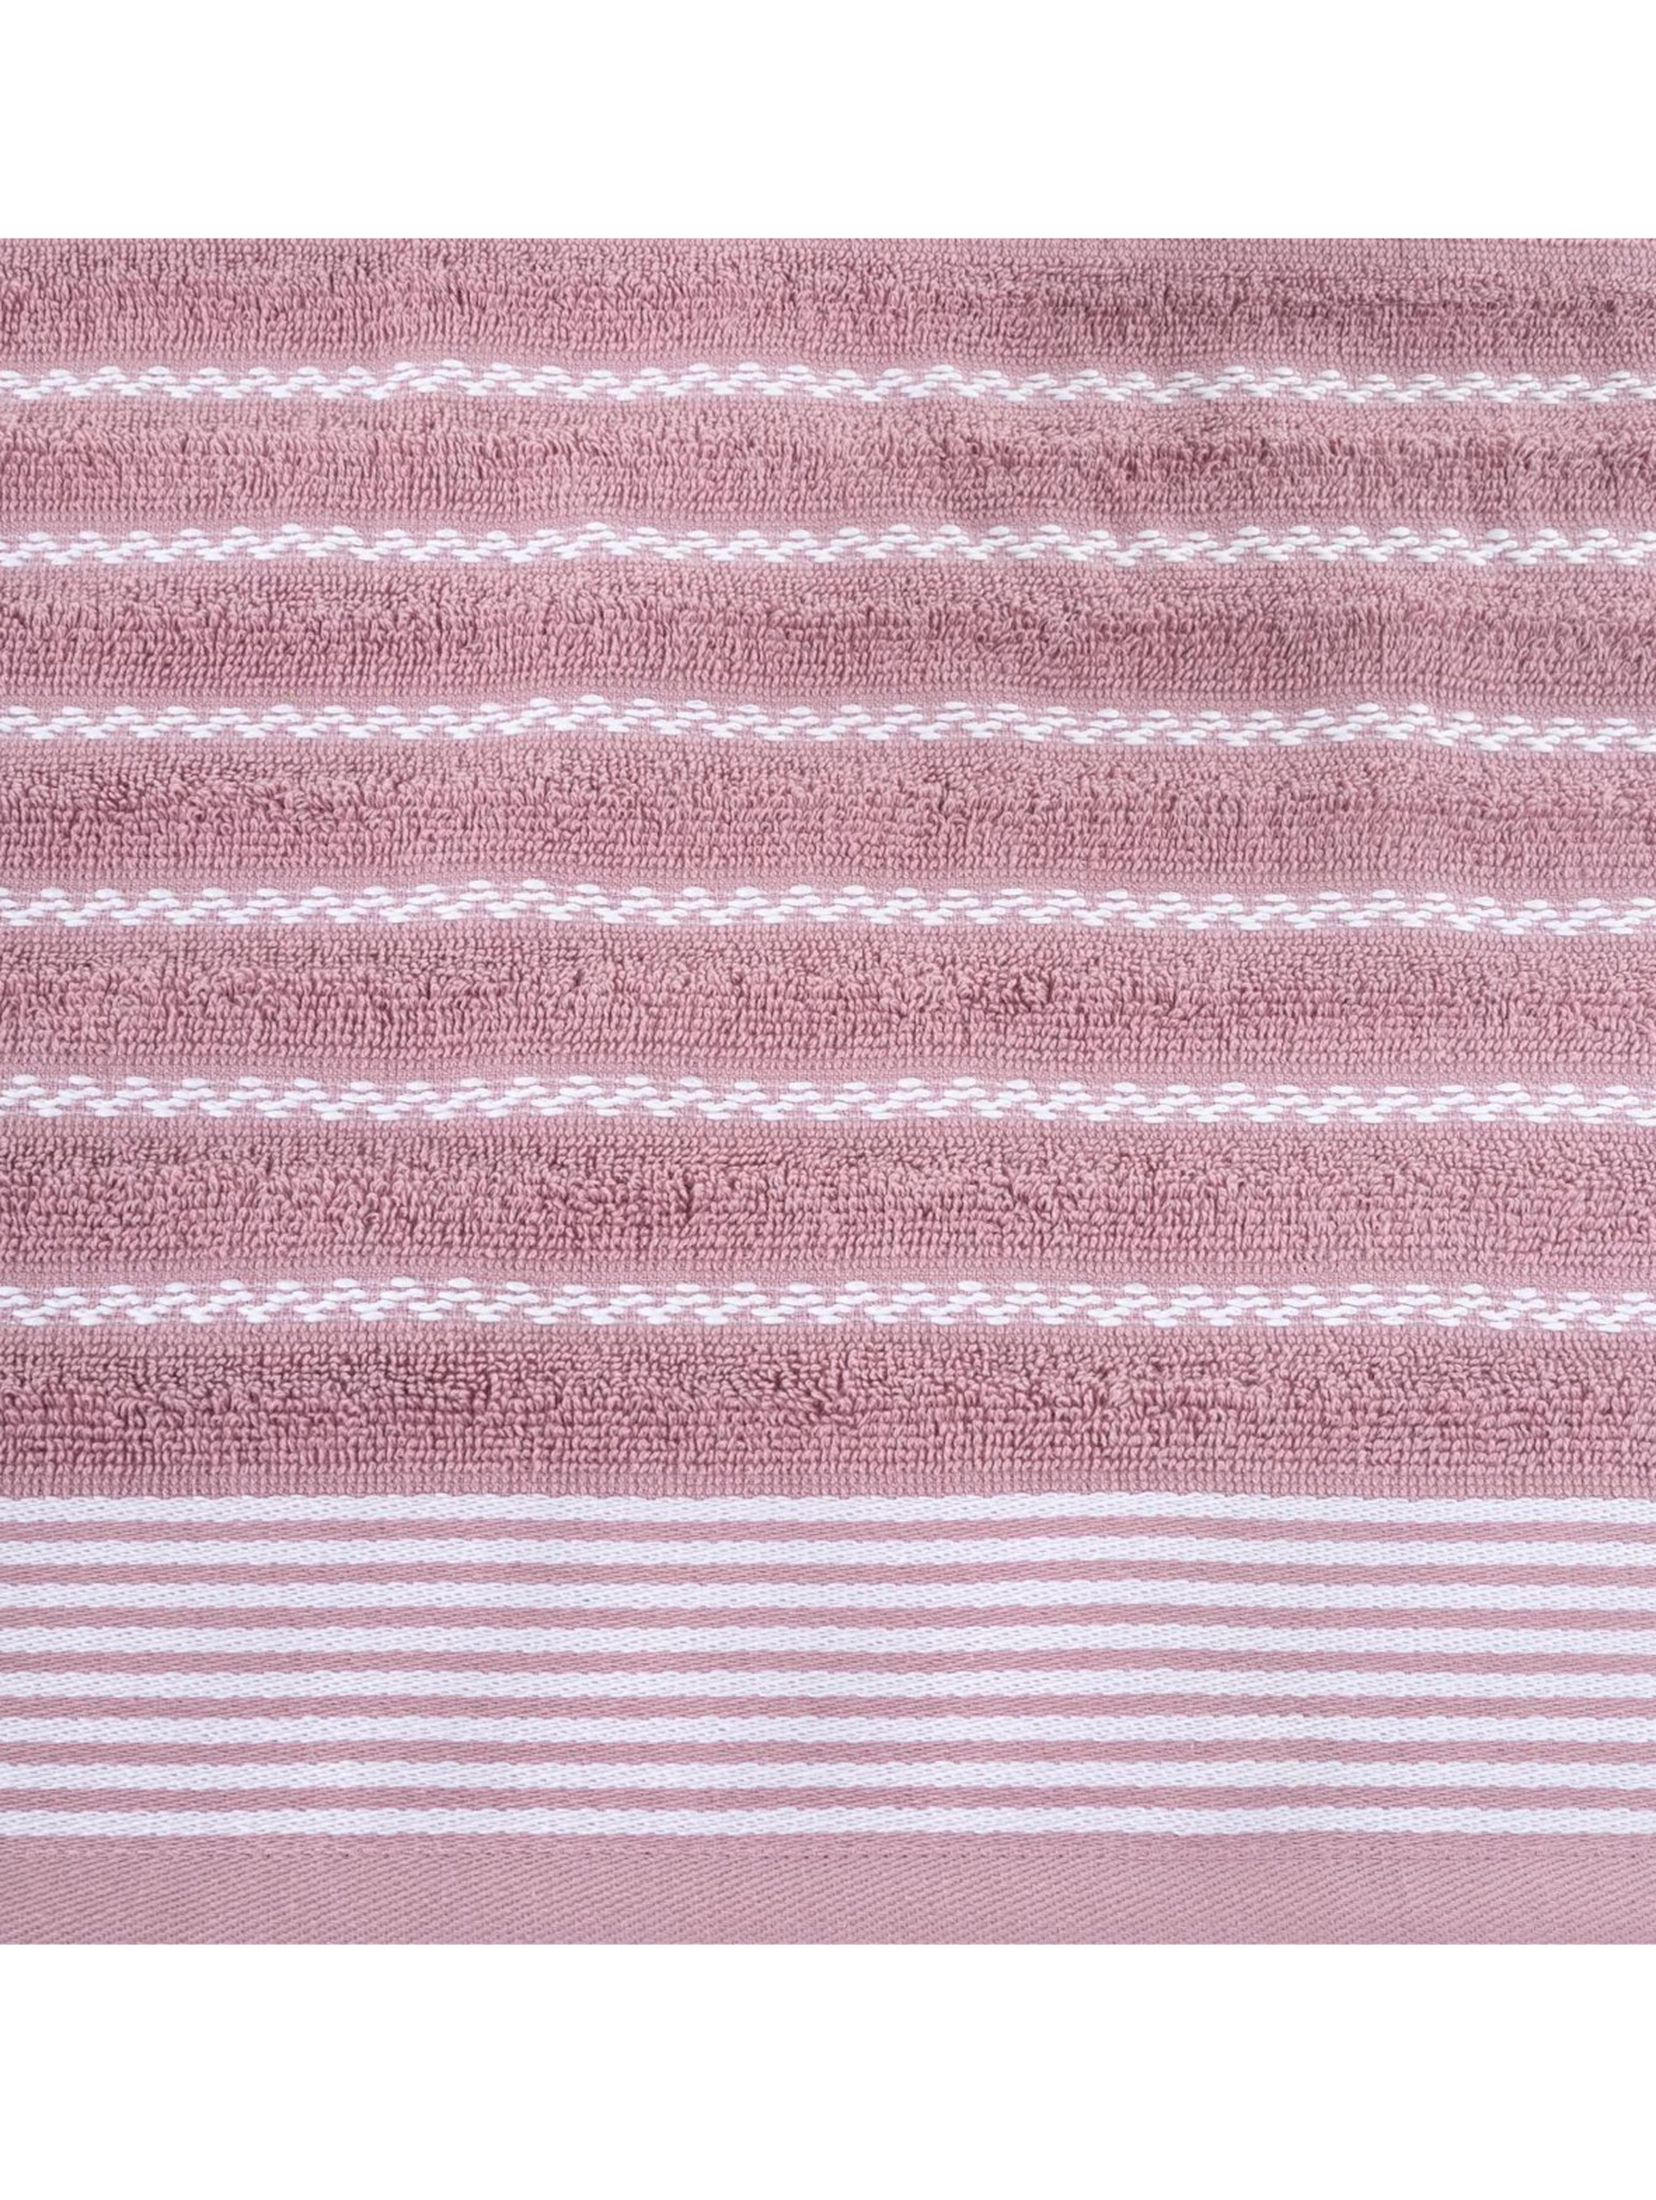 Ręcznik d91 leo (04) 70x140 cm liliowy